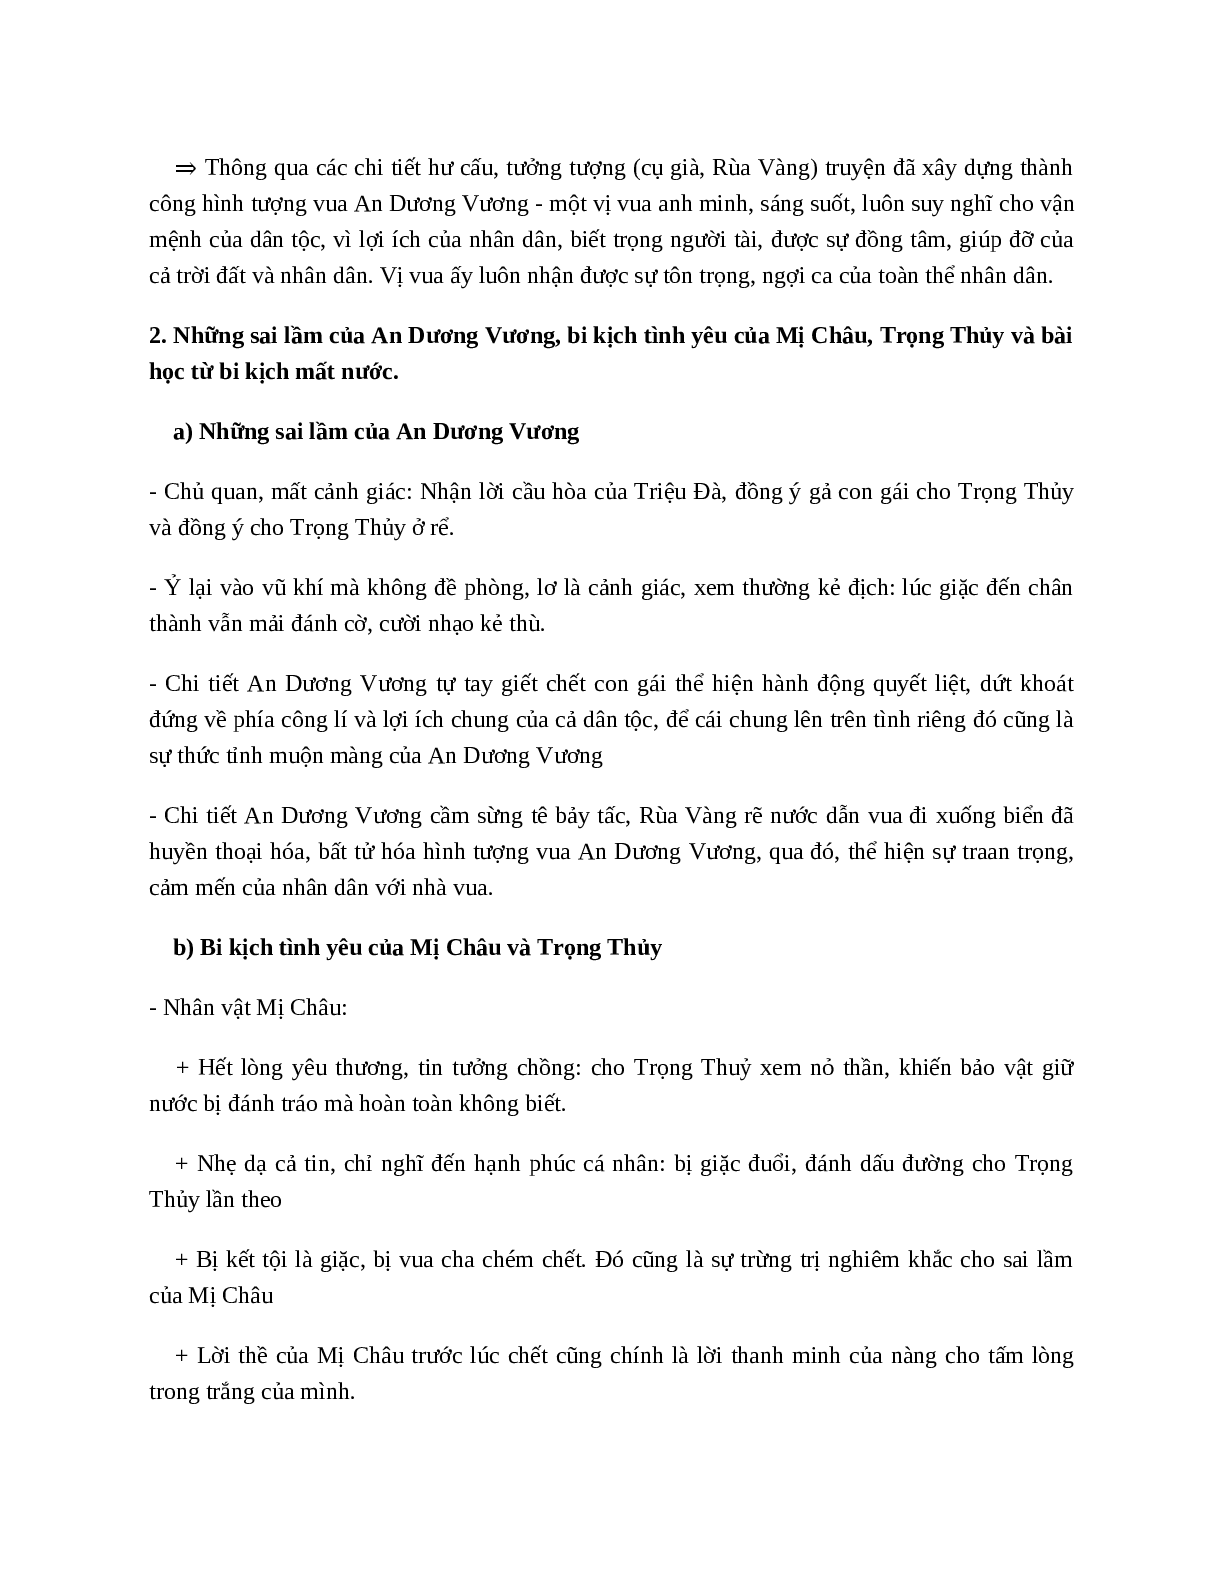 Truyện An Dương Vương và Mị Châu, Trọng Thủy - nội dung, dàn ý phân tích, bố cục, tóm tắt (trang 3)